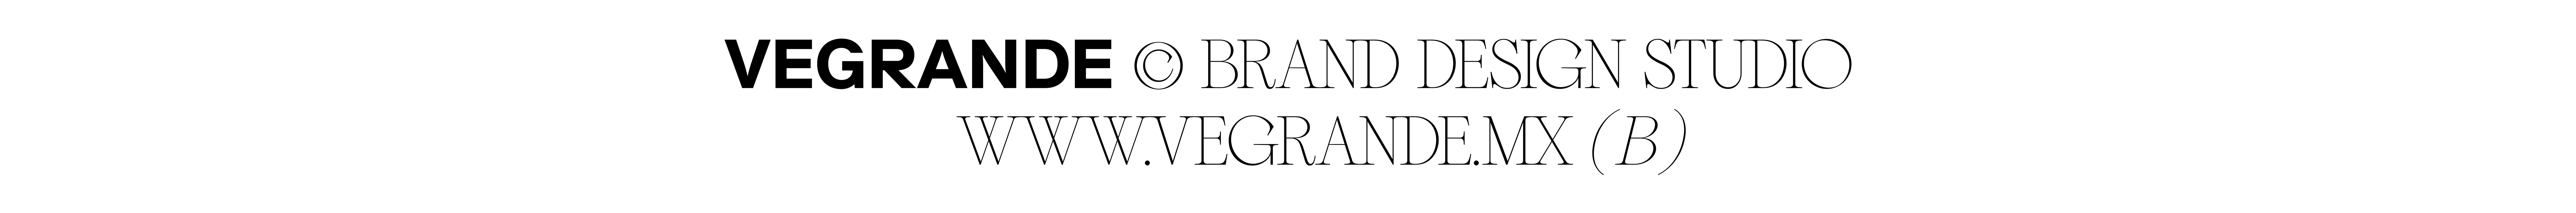 Profil-Banner von VEGRANDE ®